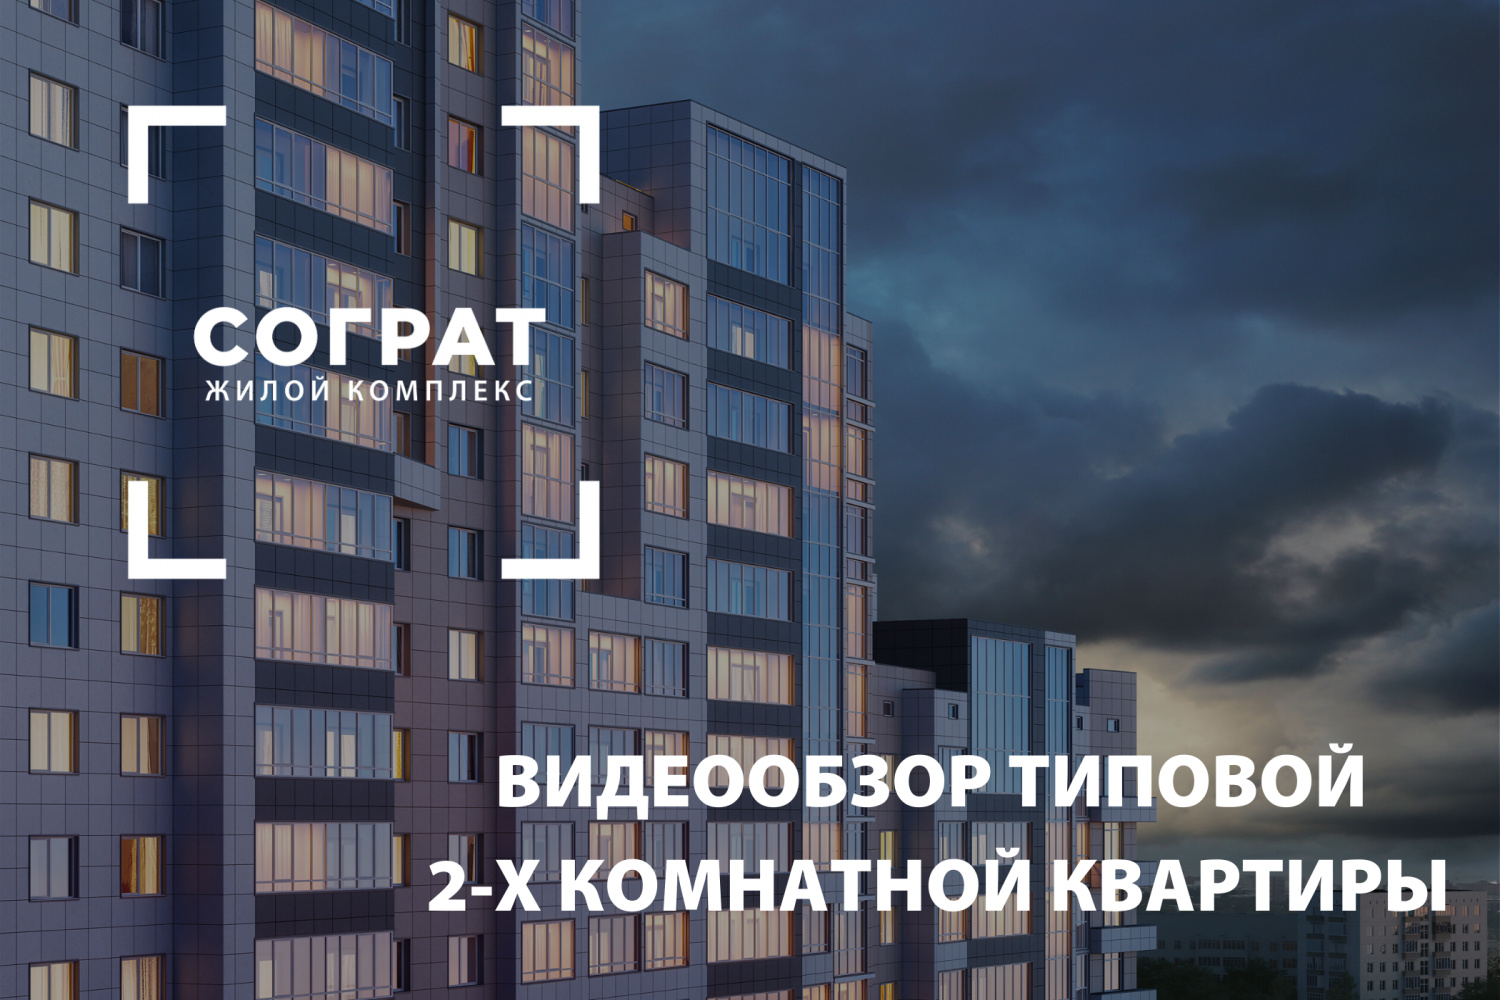 Видеообзор типовой 2-х комнатной квартиры в ЖК «Сограт»